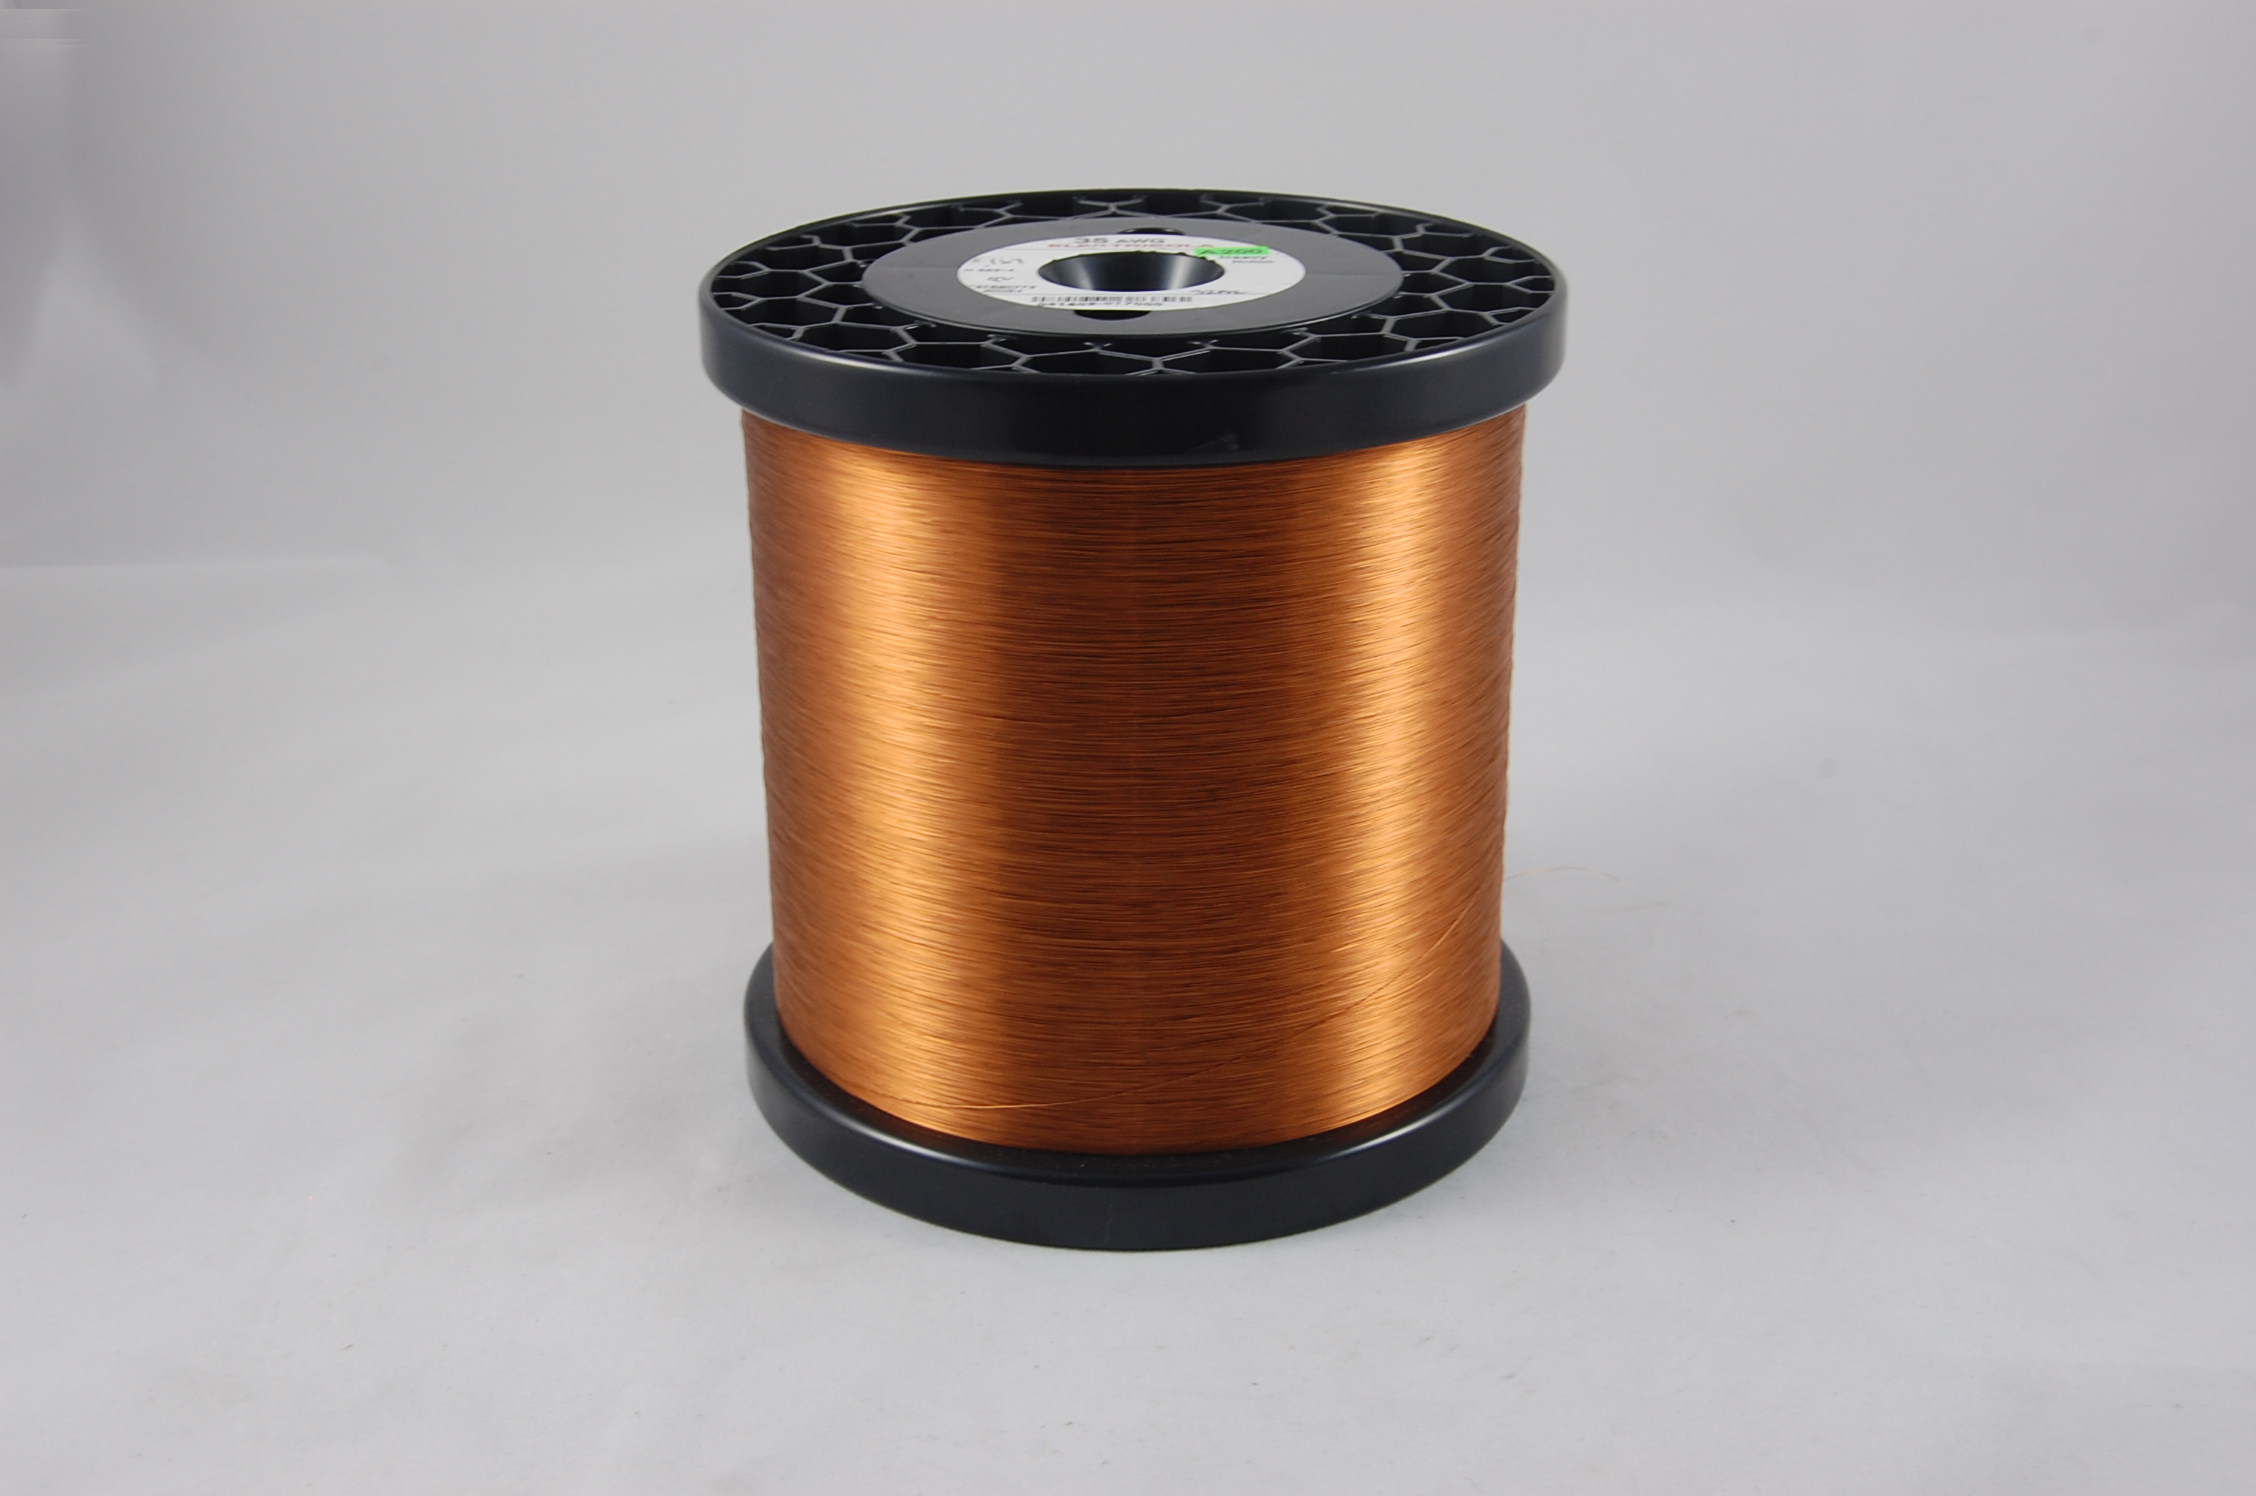 #37 Single Amidester 200 Round MW 74 Copper Magnet Wire 200°C, copper,  14 LB 6" x 6" spool (average wght.)